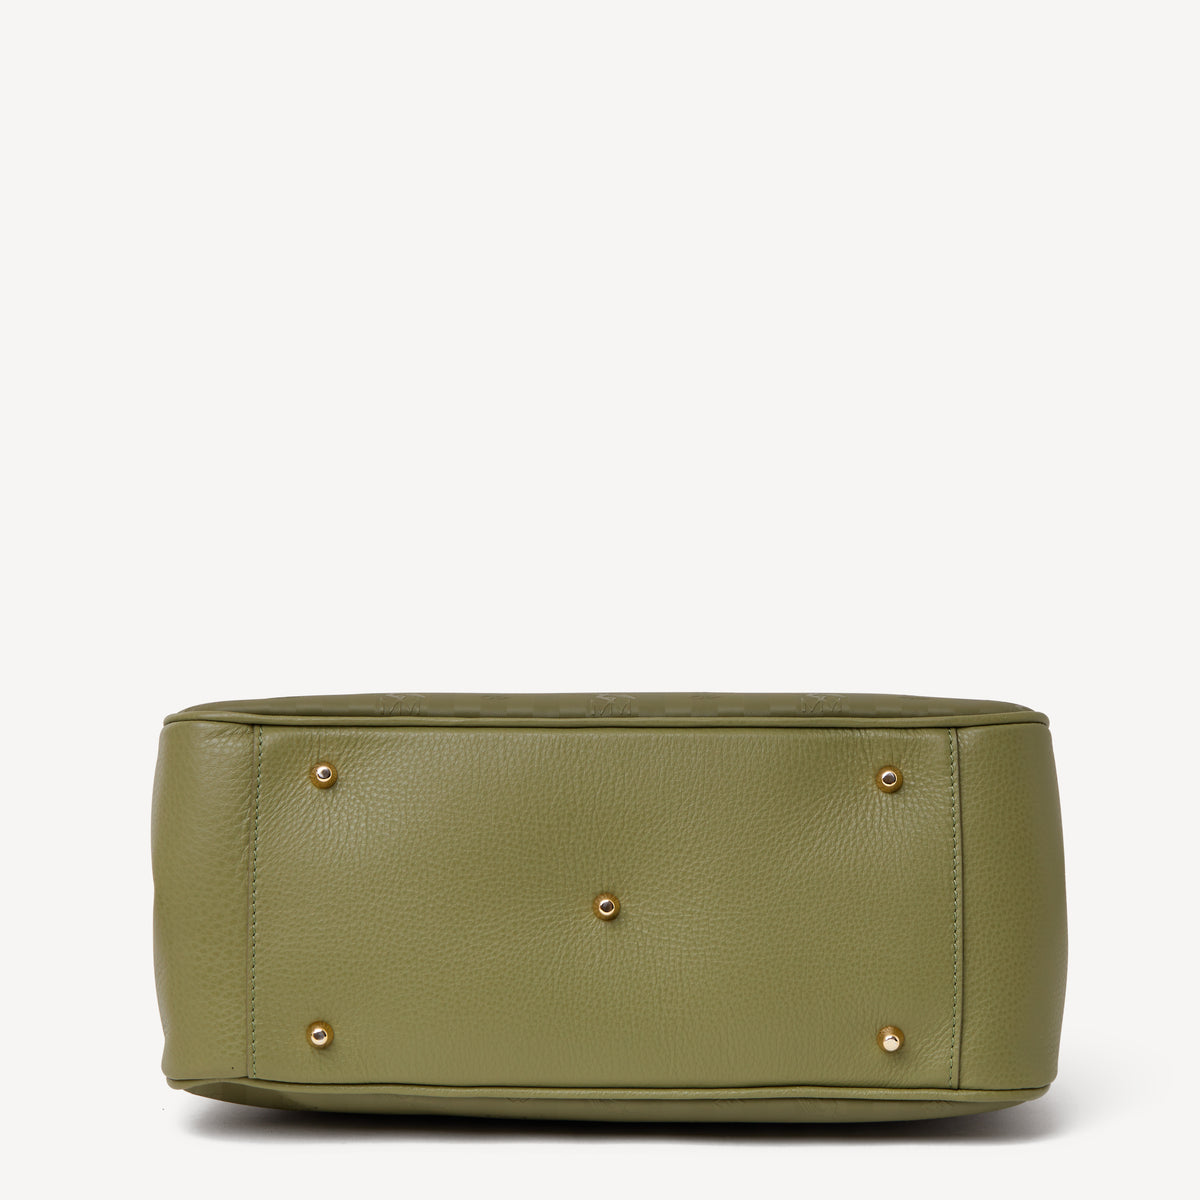 DONAT | Handtasche grün/gold - von unten 